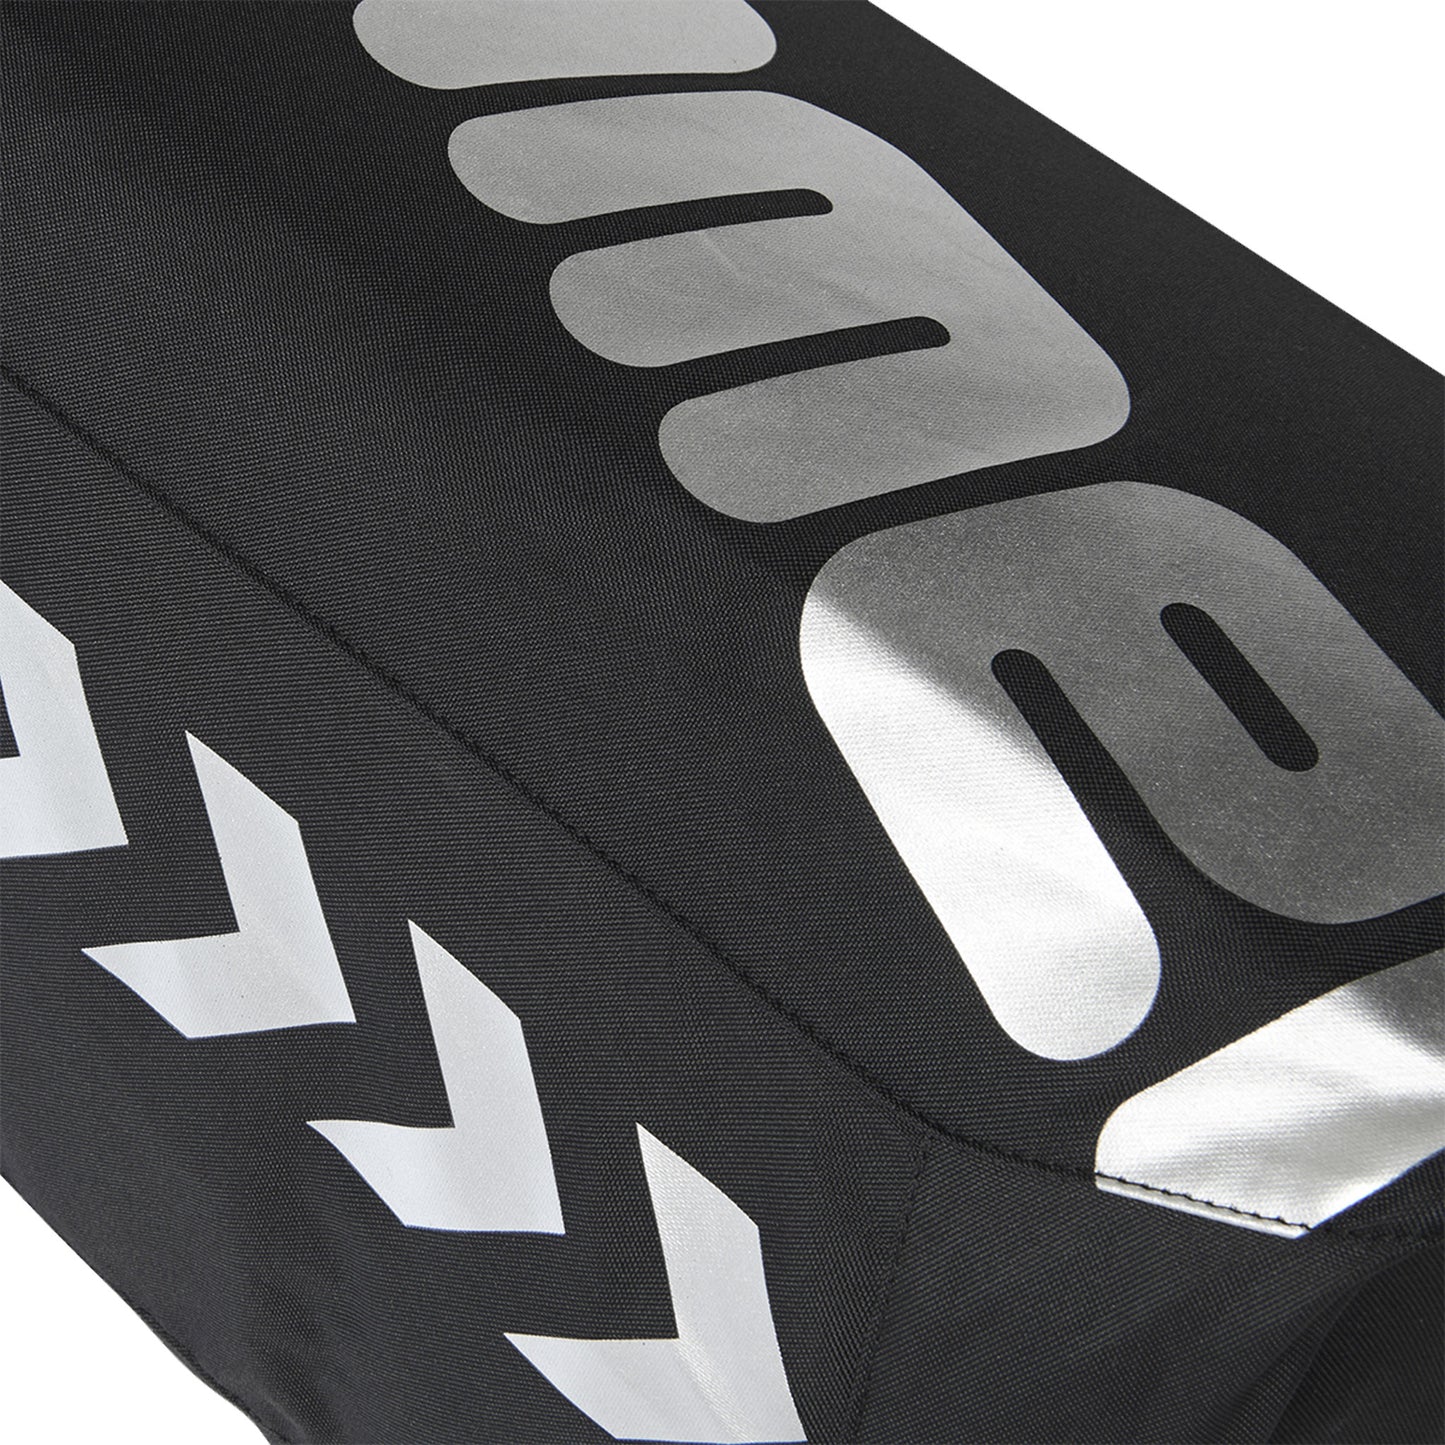 Hummel Core Sports Bag - Medium - Black